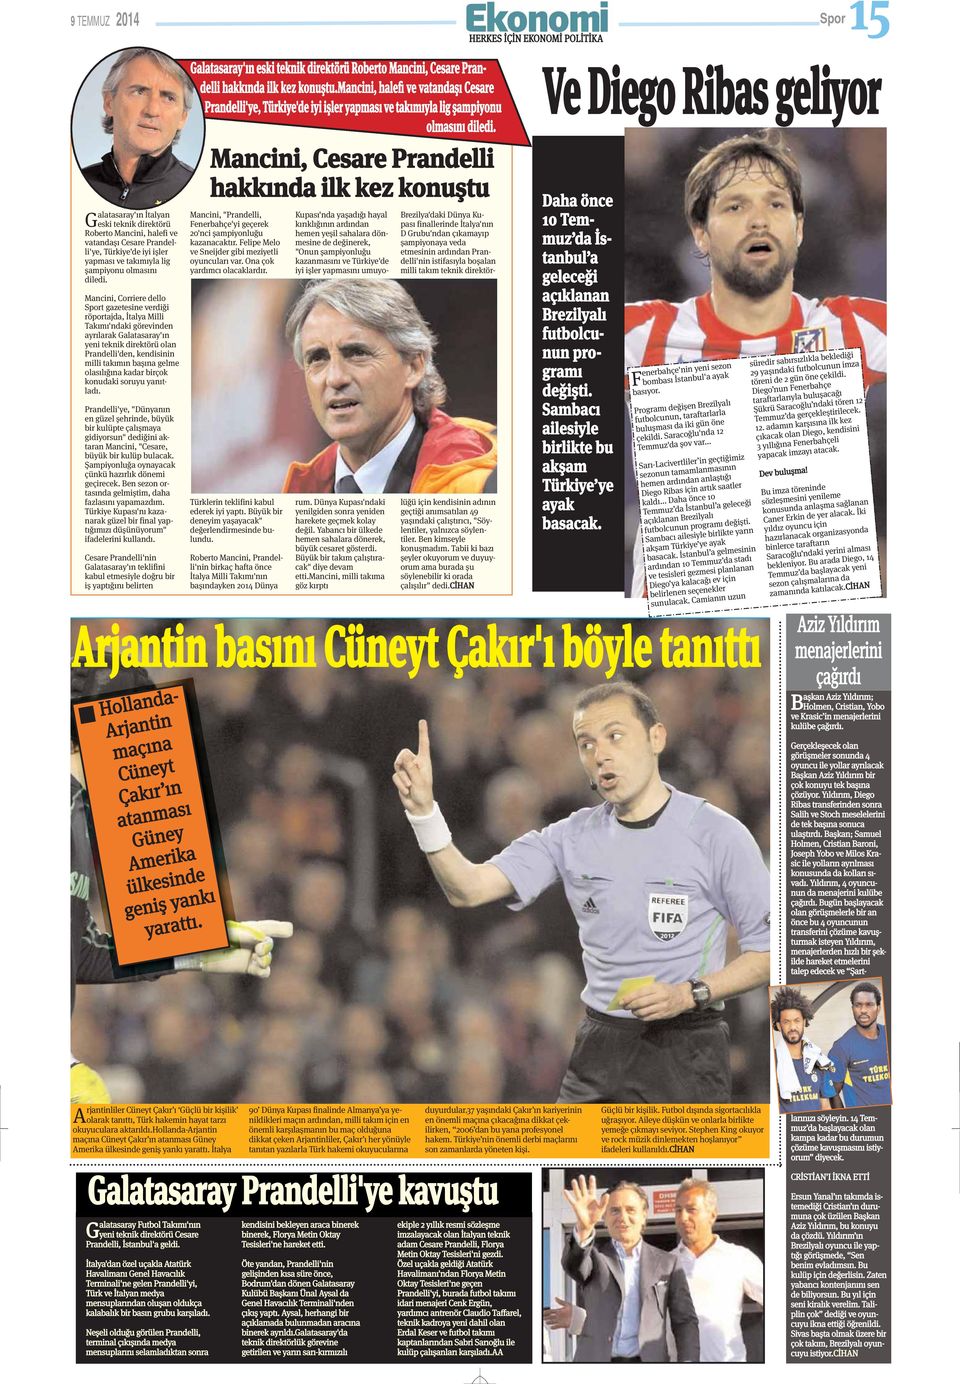 Mancini, Corriere dello Sport gazetesine verdiği röportajda, İtalya Milli Takımı'ndaki görevinden ayrılarak Galatasaray'ın yeni teknik direktörü olan Prandelli'den, kendisinin milli takımın başına